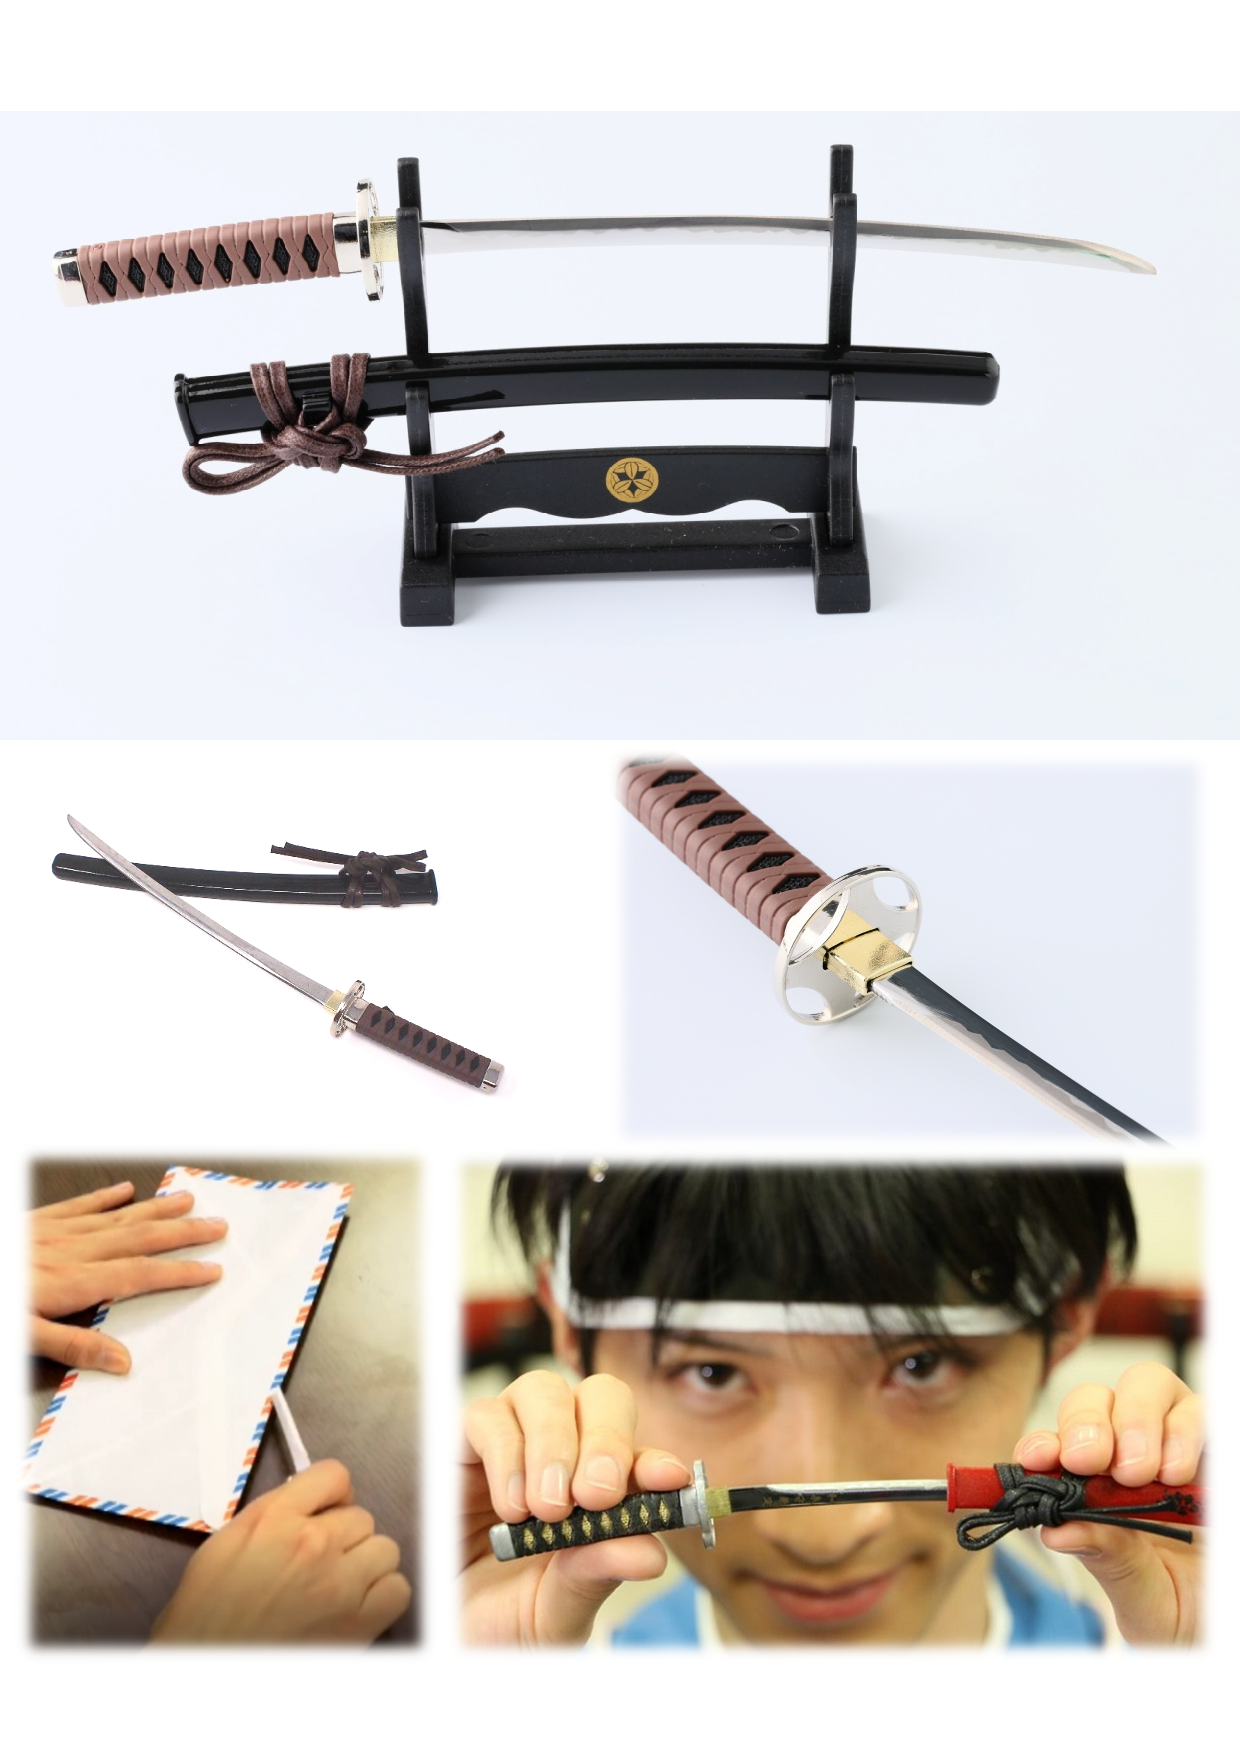 Letter Opener SAMURAI KATANA SWORD Knife Desk Decor item 8 inch Length Safe Edge Saito Hajime Model MT-34H - JAPANESE GIFTS 